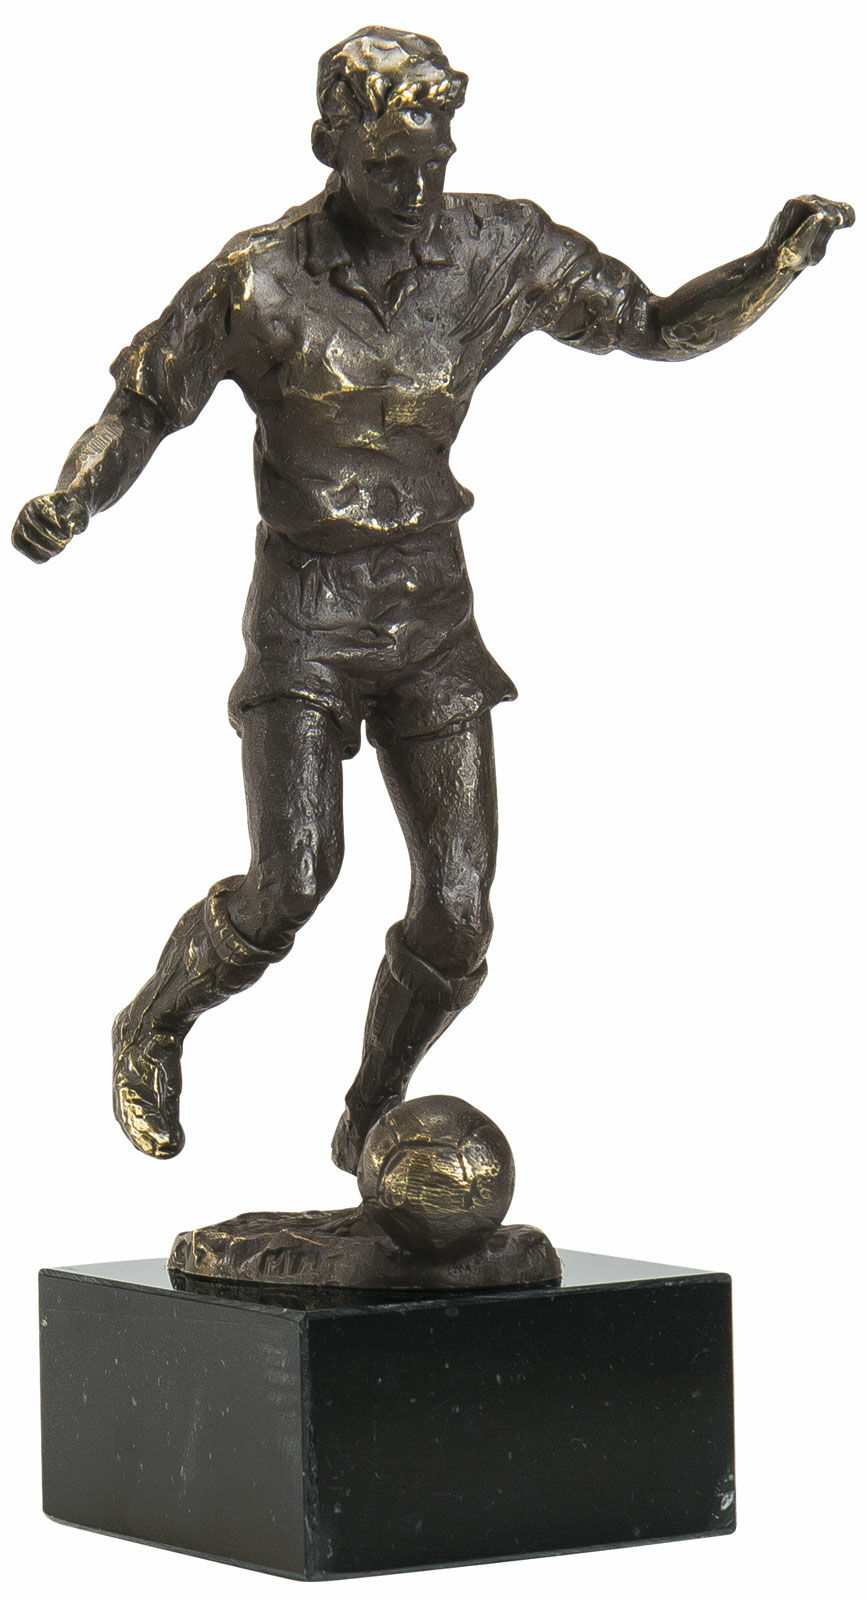 Skulptur "Fodboldspiller" von Gerard